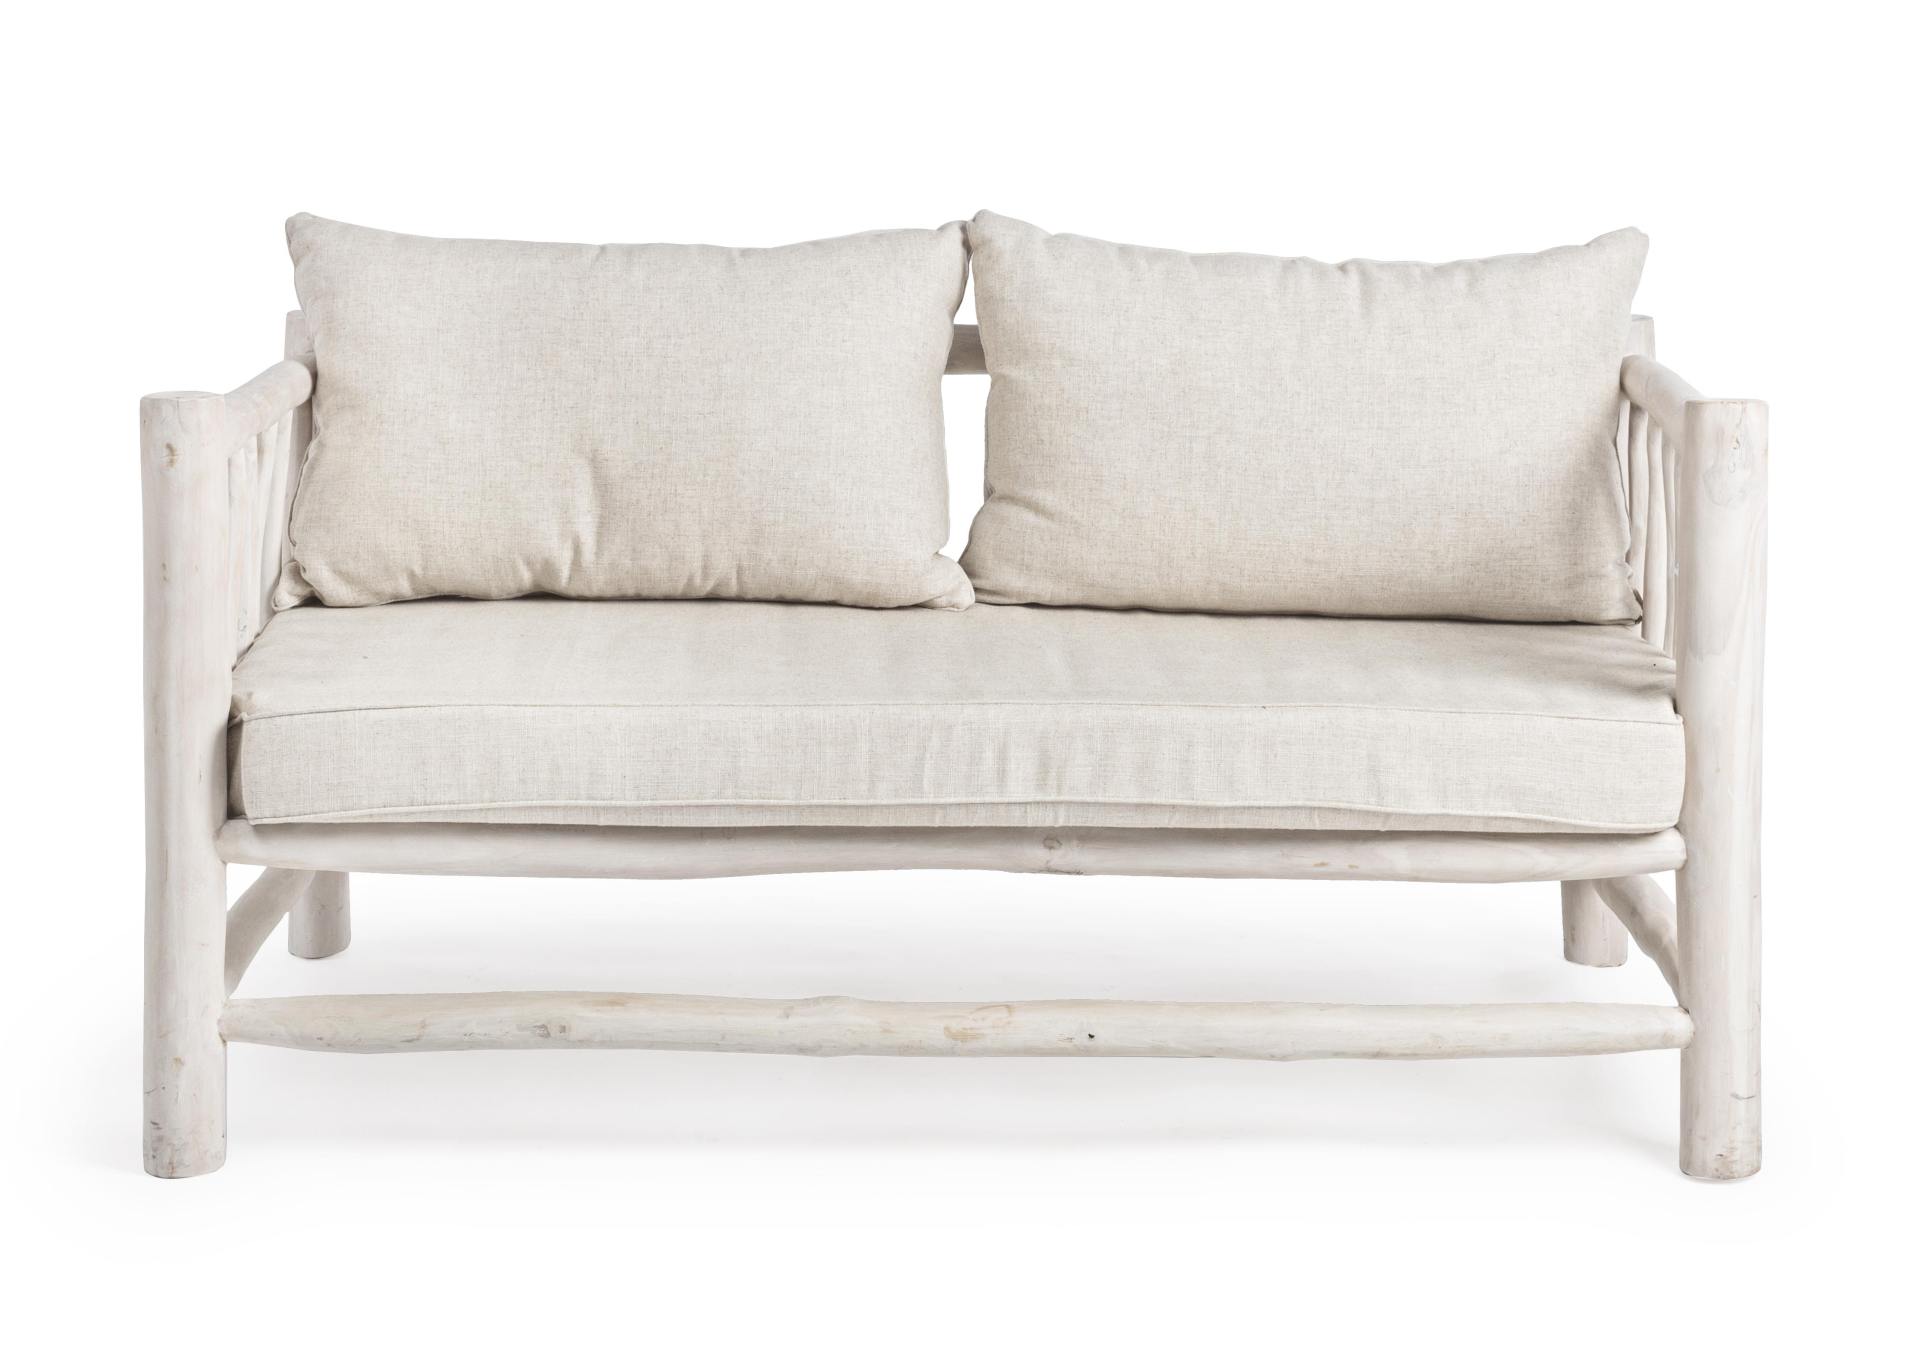 Das Sofa Sahel überzeugt mit seinem klassischen Design. Gefertigt wurde es aus Teakholz, welches einen weißen Farbton besitzt. Die Kissen sind aus einem Mix aus Baumwolle und Leinen. Das Sofa ist in der Ausführung als 2-Sitzer. Die Breite beträgt 140 cm.